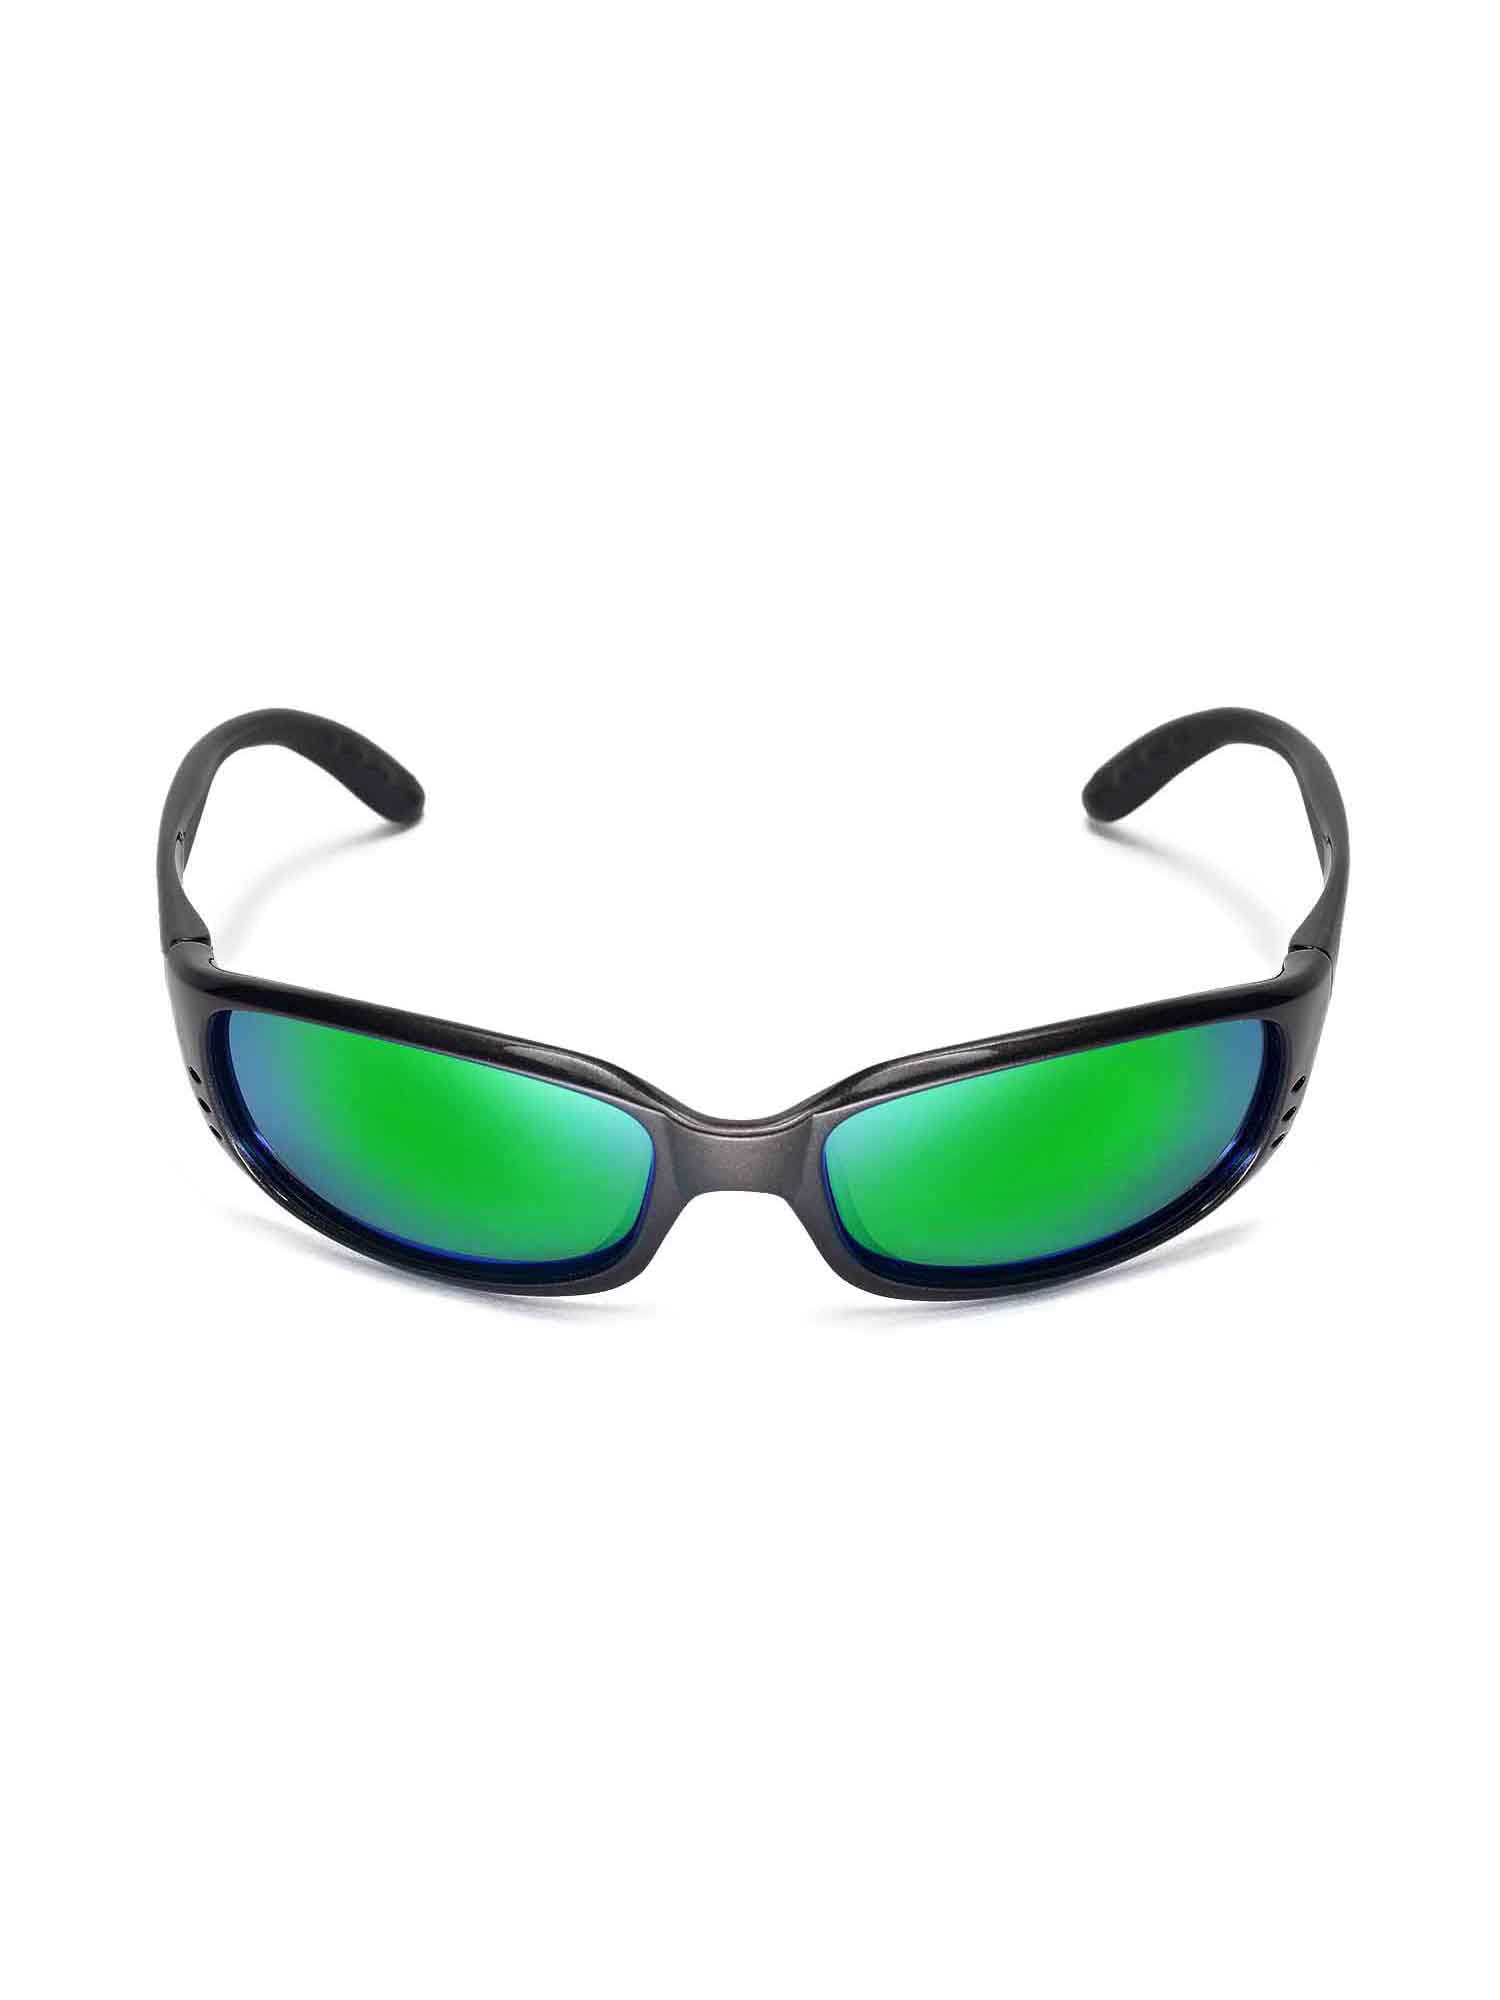 Costa Del Mar Walleva Emerald Polarized Replacement Lenses For Costa Del Mar Brine Sunglasses 